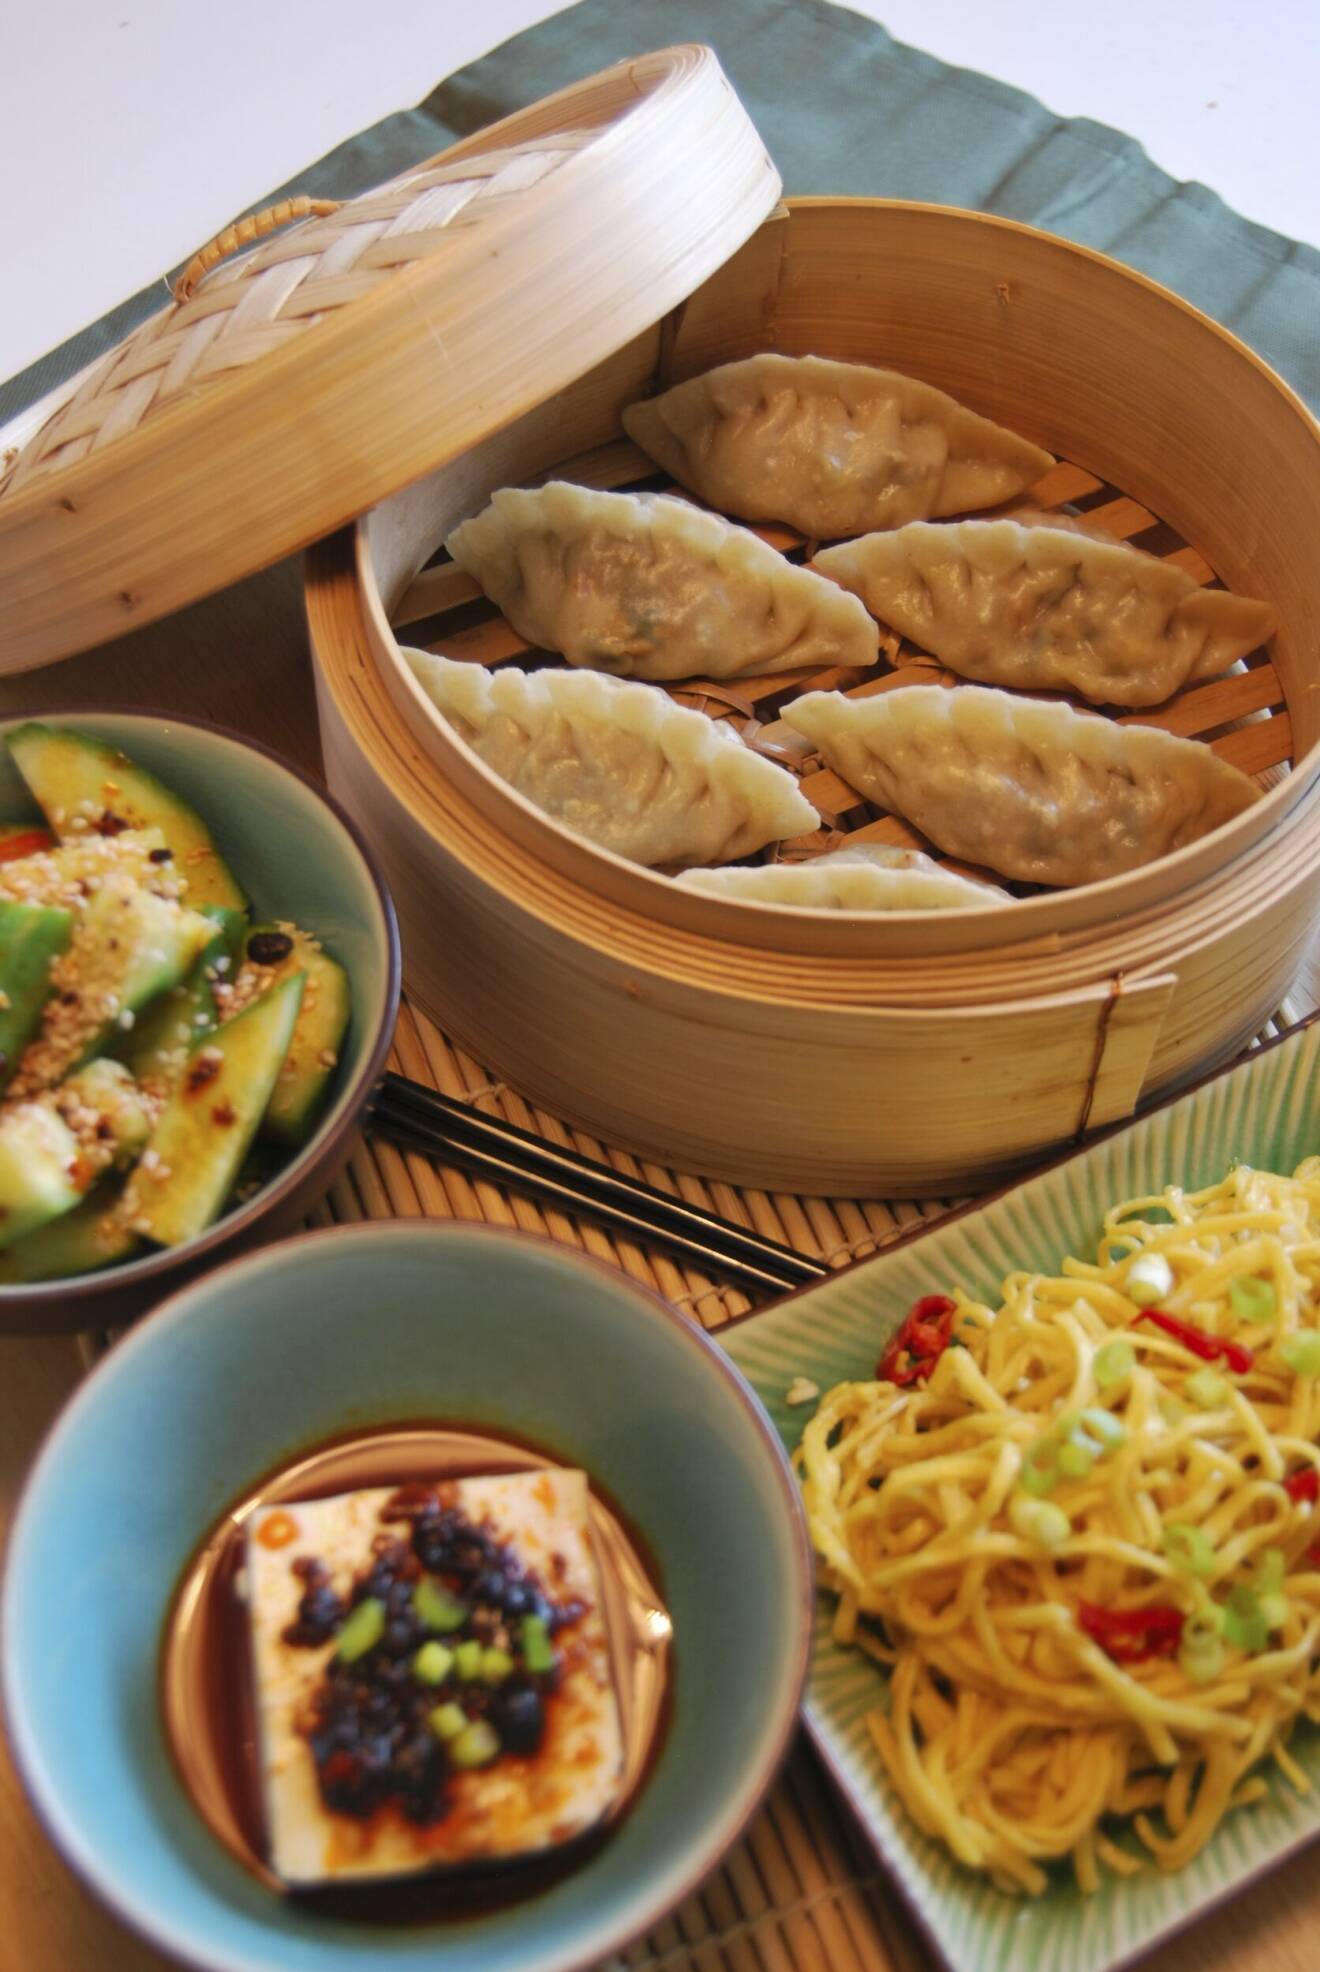 En bild på olika typer av asiatisk mat bland annat dumplings, gurksallad och nudlar.